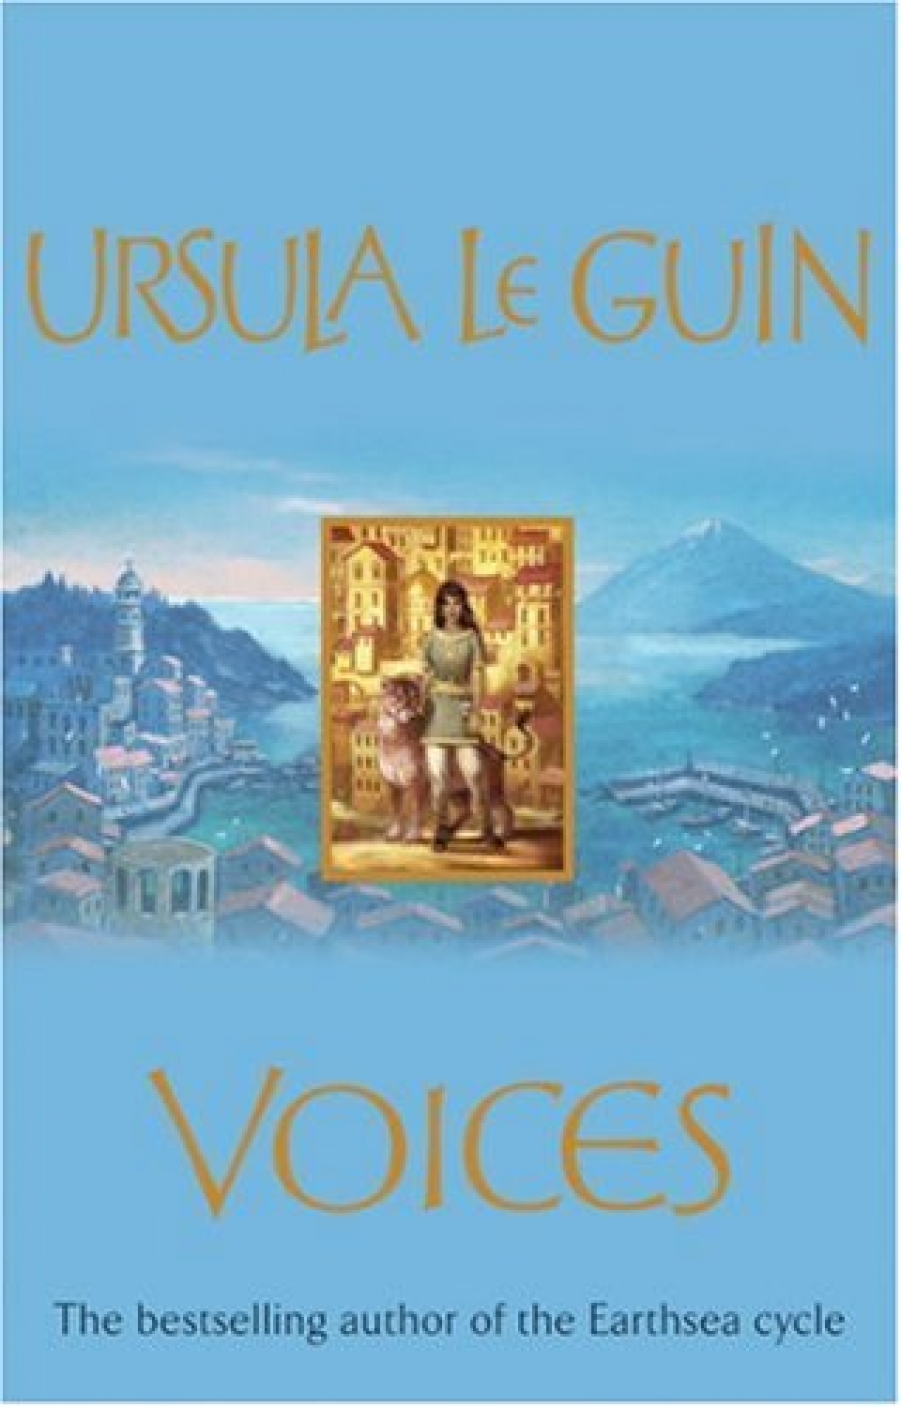 Le Guin, Ursula K. Voices 